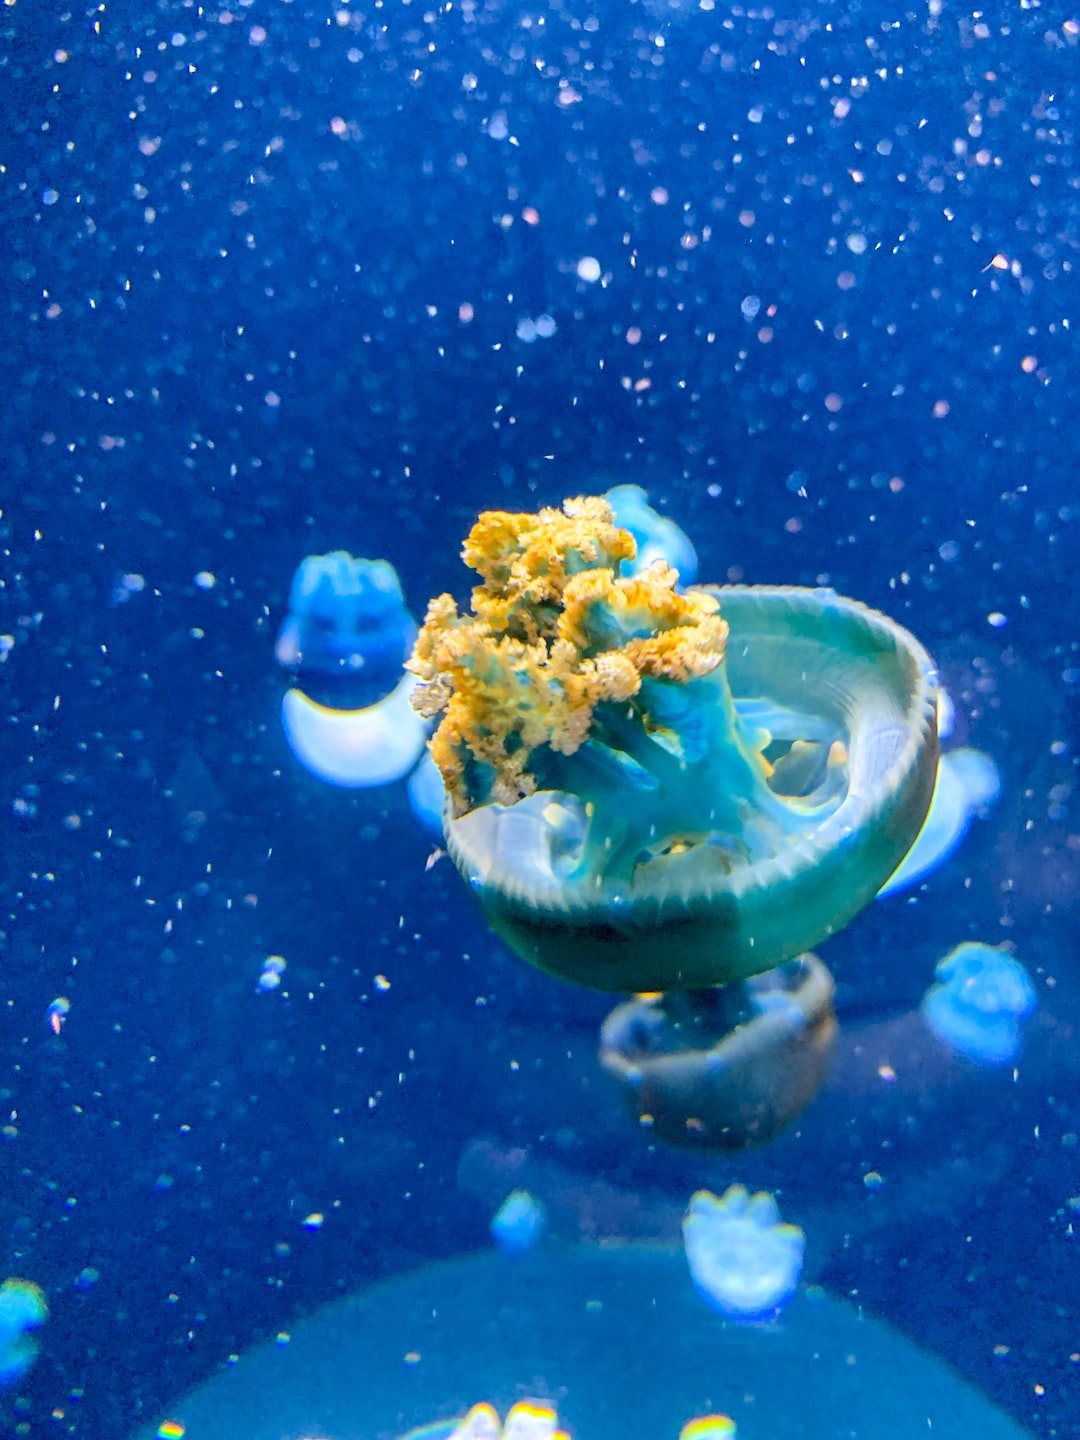 25 wichtige Fragen zu What Holds An Aquarium Together?